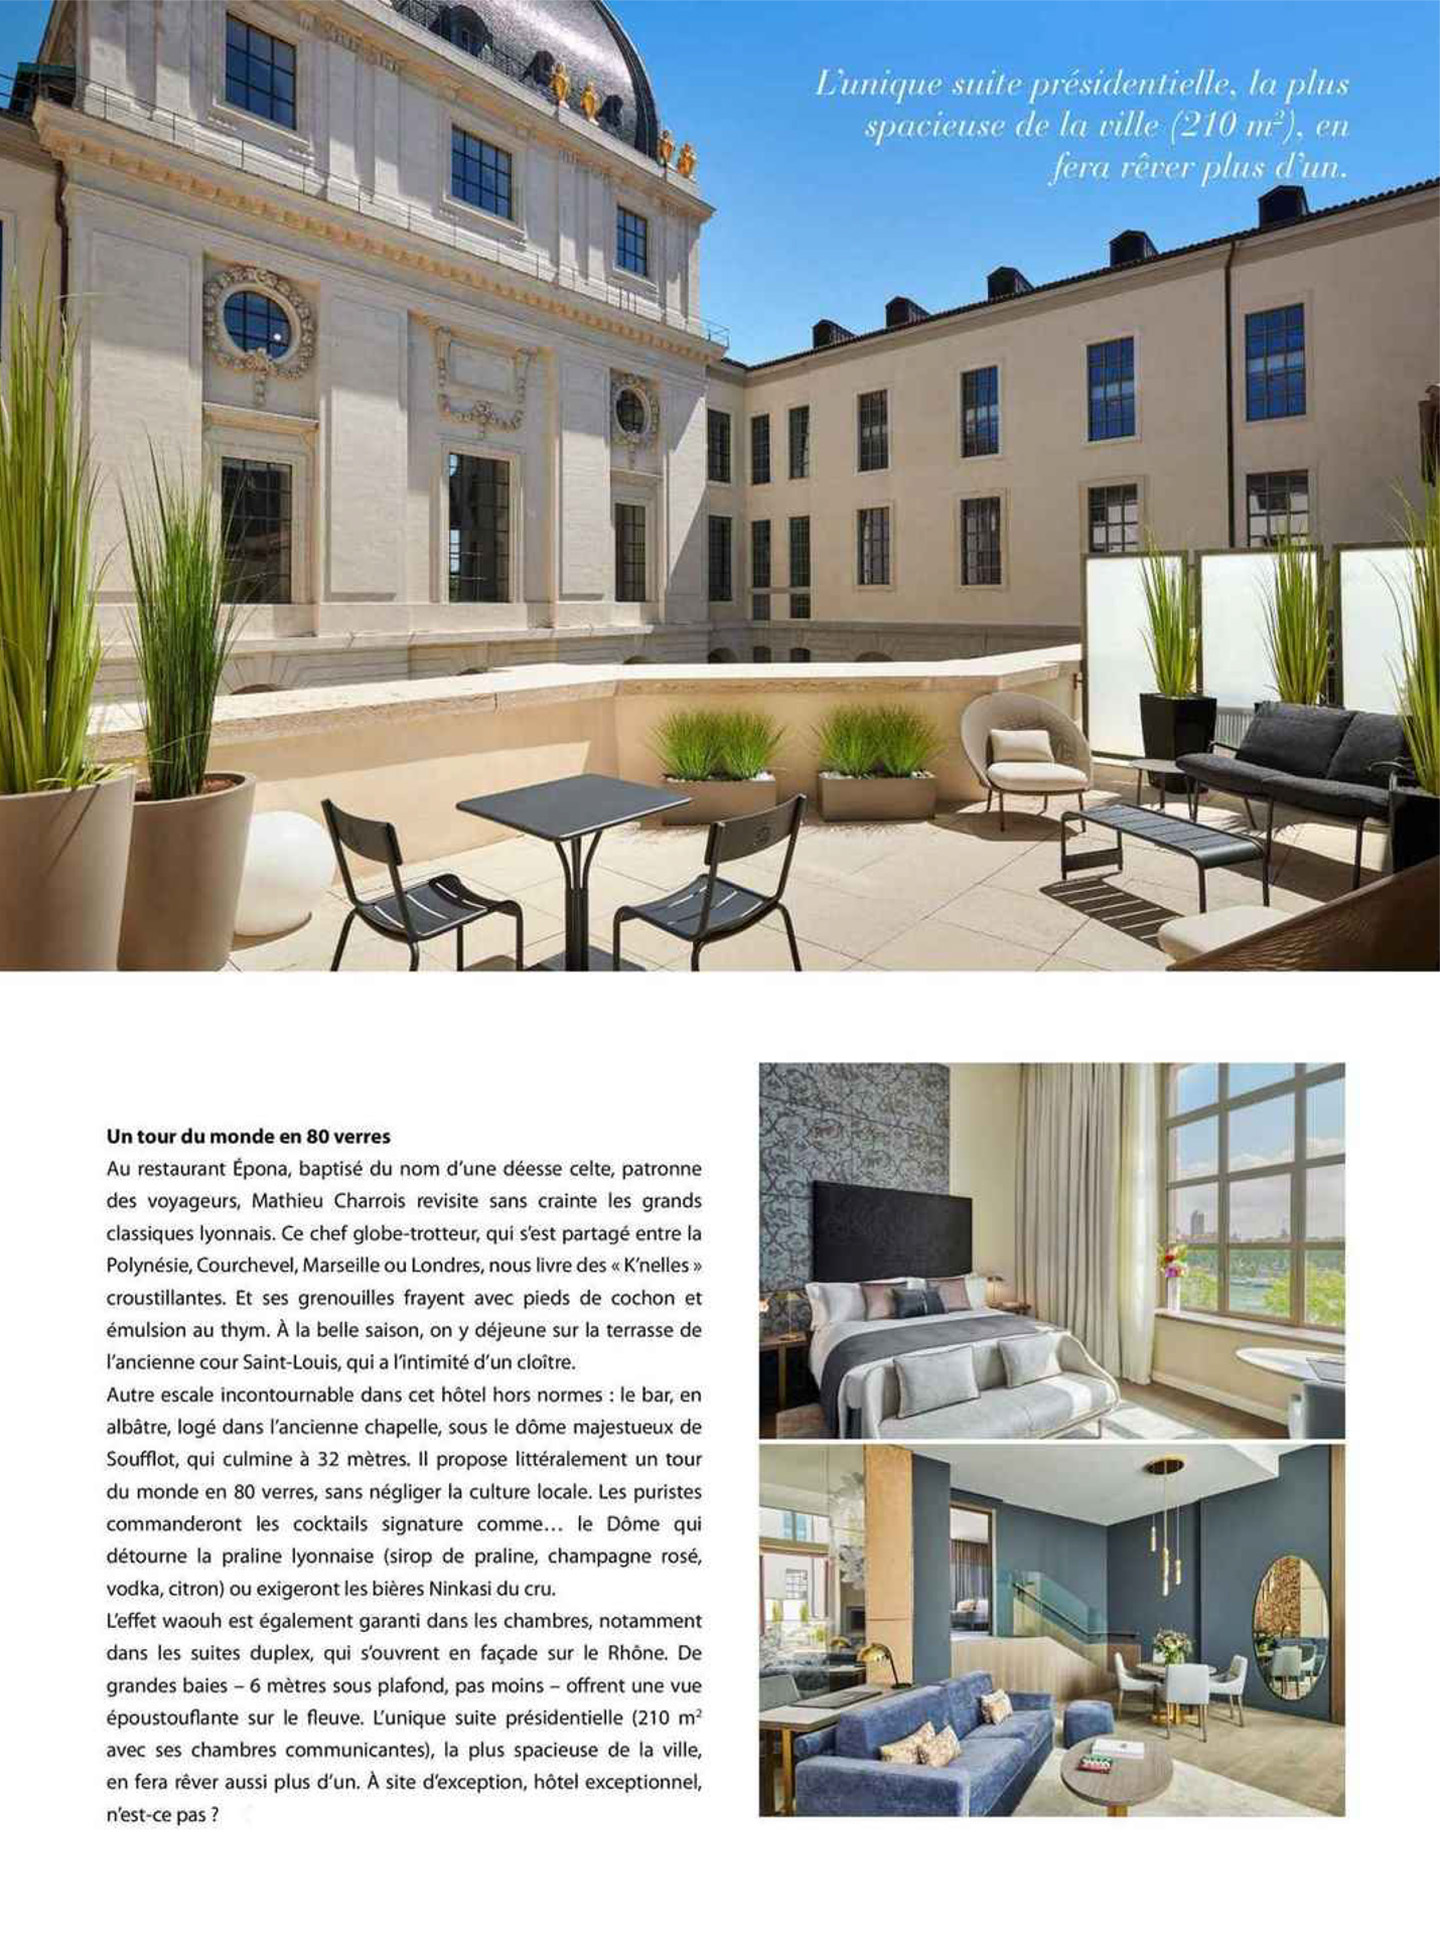 Article sur l'InterContinental Lyon Hotel Dieu réalisé par le studio jean-Philippe Nuel dans le magazine Voyage de luxe, nouvel hotel de luxe, architecture d'intérieur de luxe, patrimoine historique